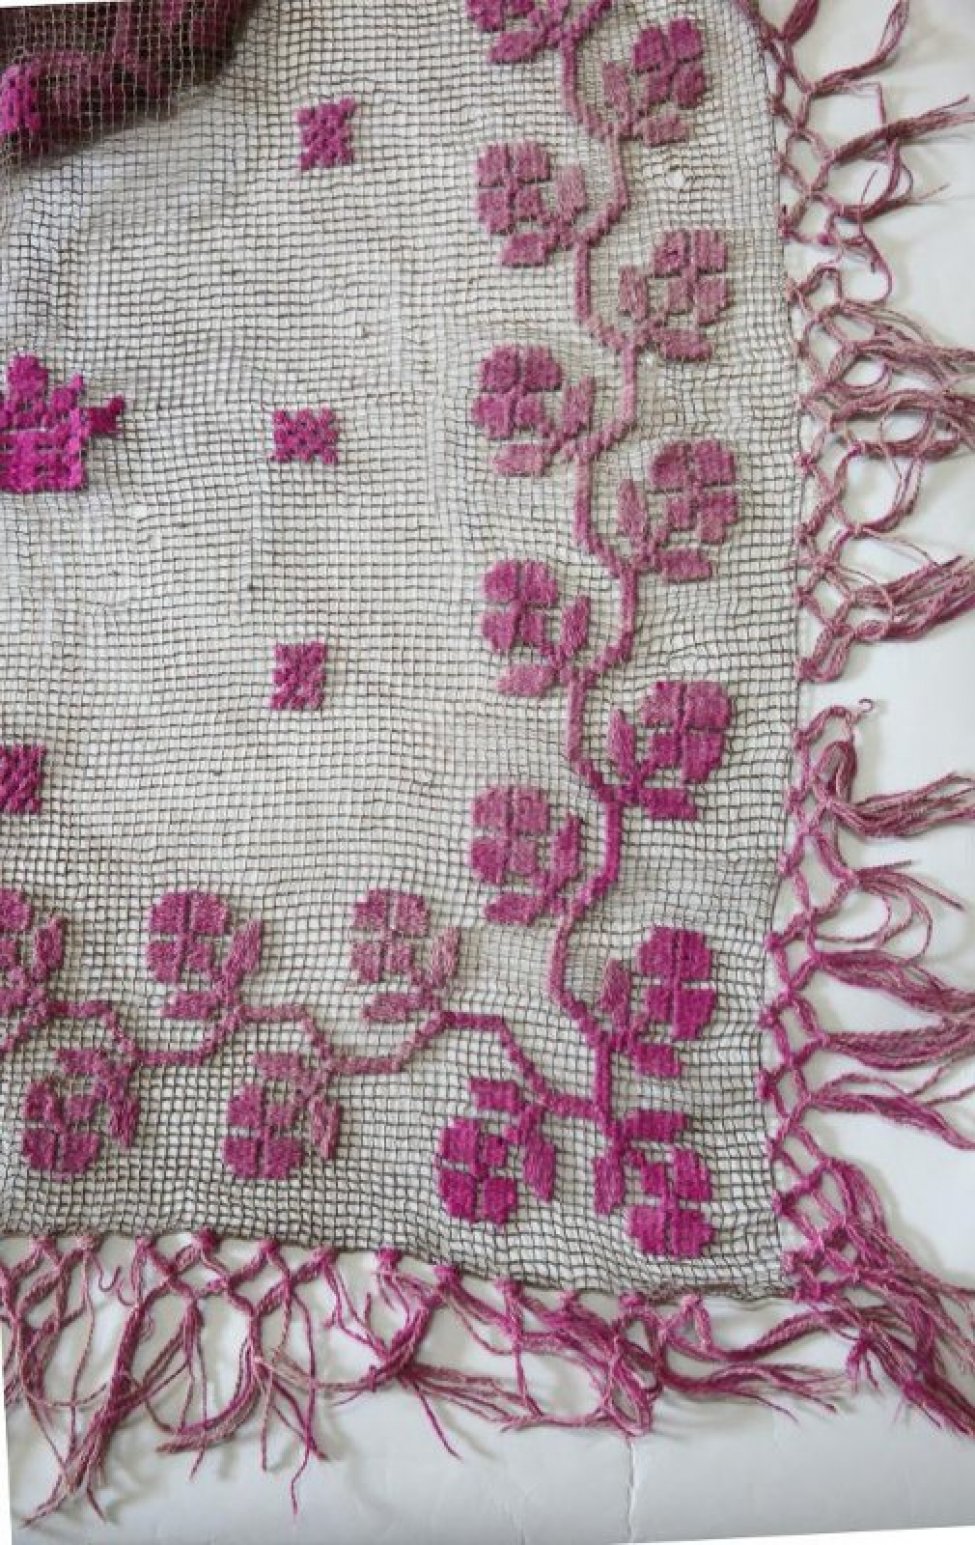 В виде коричневой сетки, края украшены растительным орнаментом и кистями, выполненными шерстяными нитями фиолетового цвета. Центр скатерти украшен короной и восемью квадратиками, выполненными также шерстяными фиолетовыми нитями.